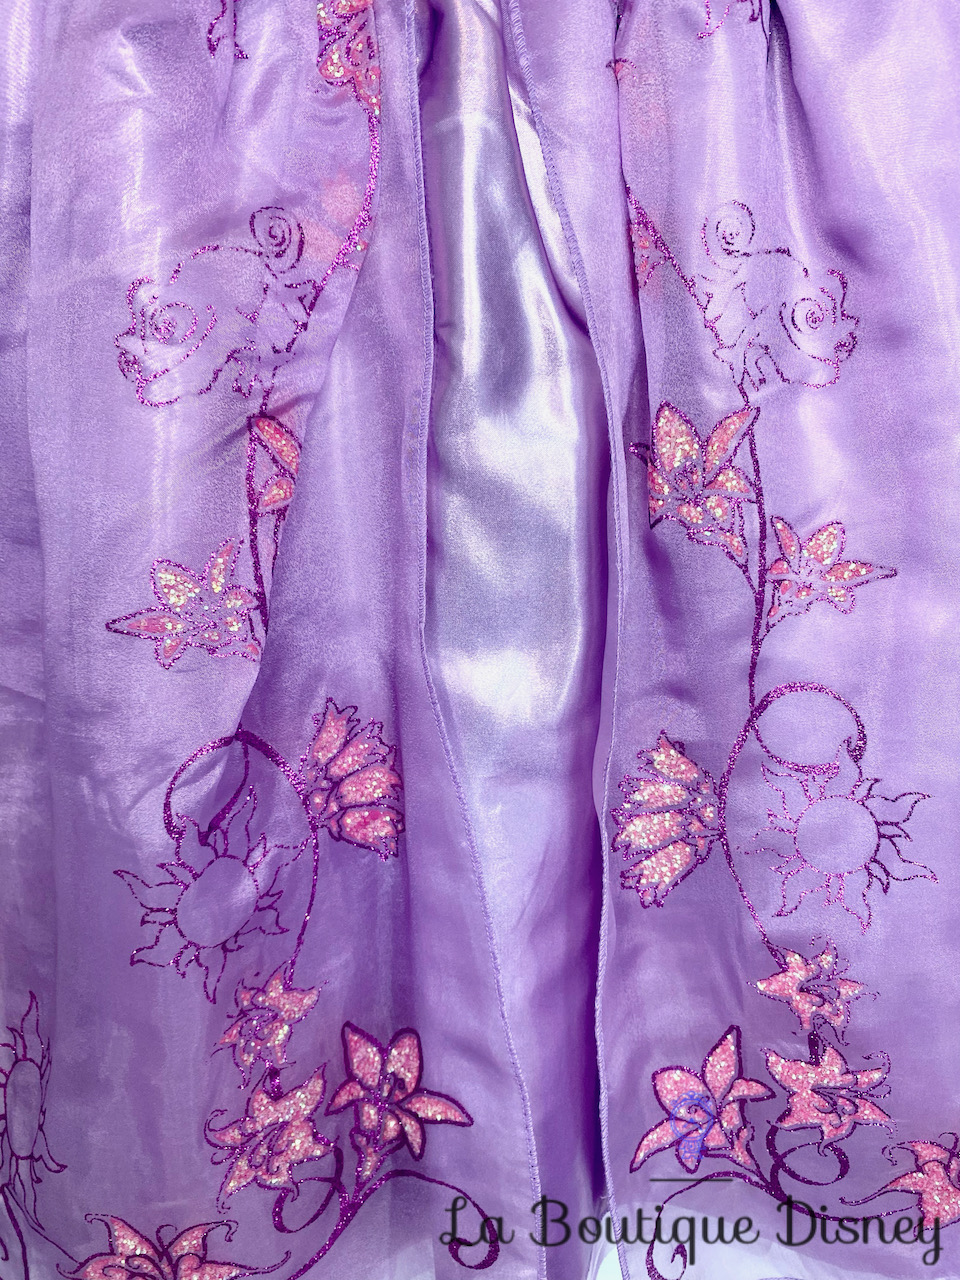 Déguisement Raiponce Disney Store taille 5-6 ans robe violet rose princesse  - Déguisements/Taille 4 à 6 ans - La Boutique Disney